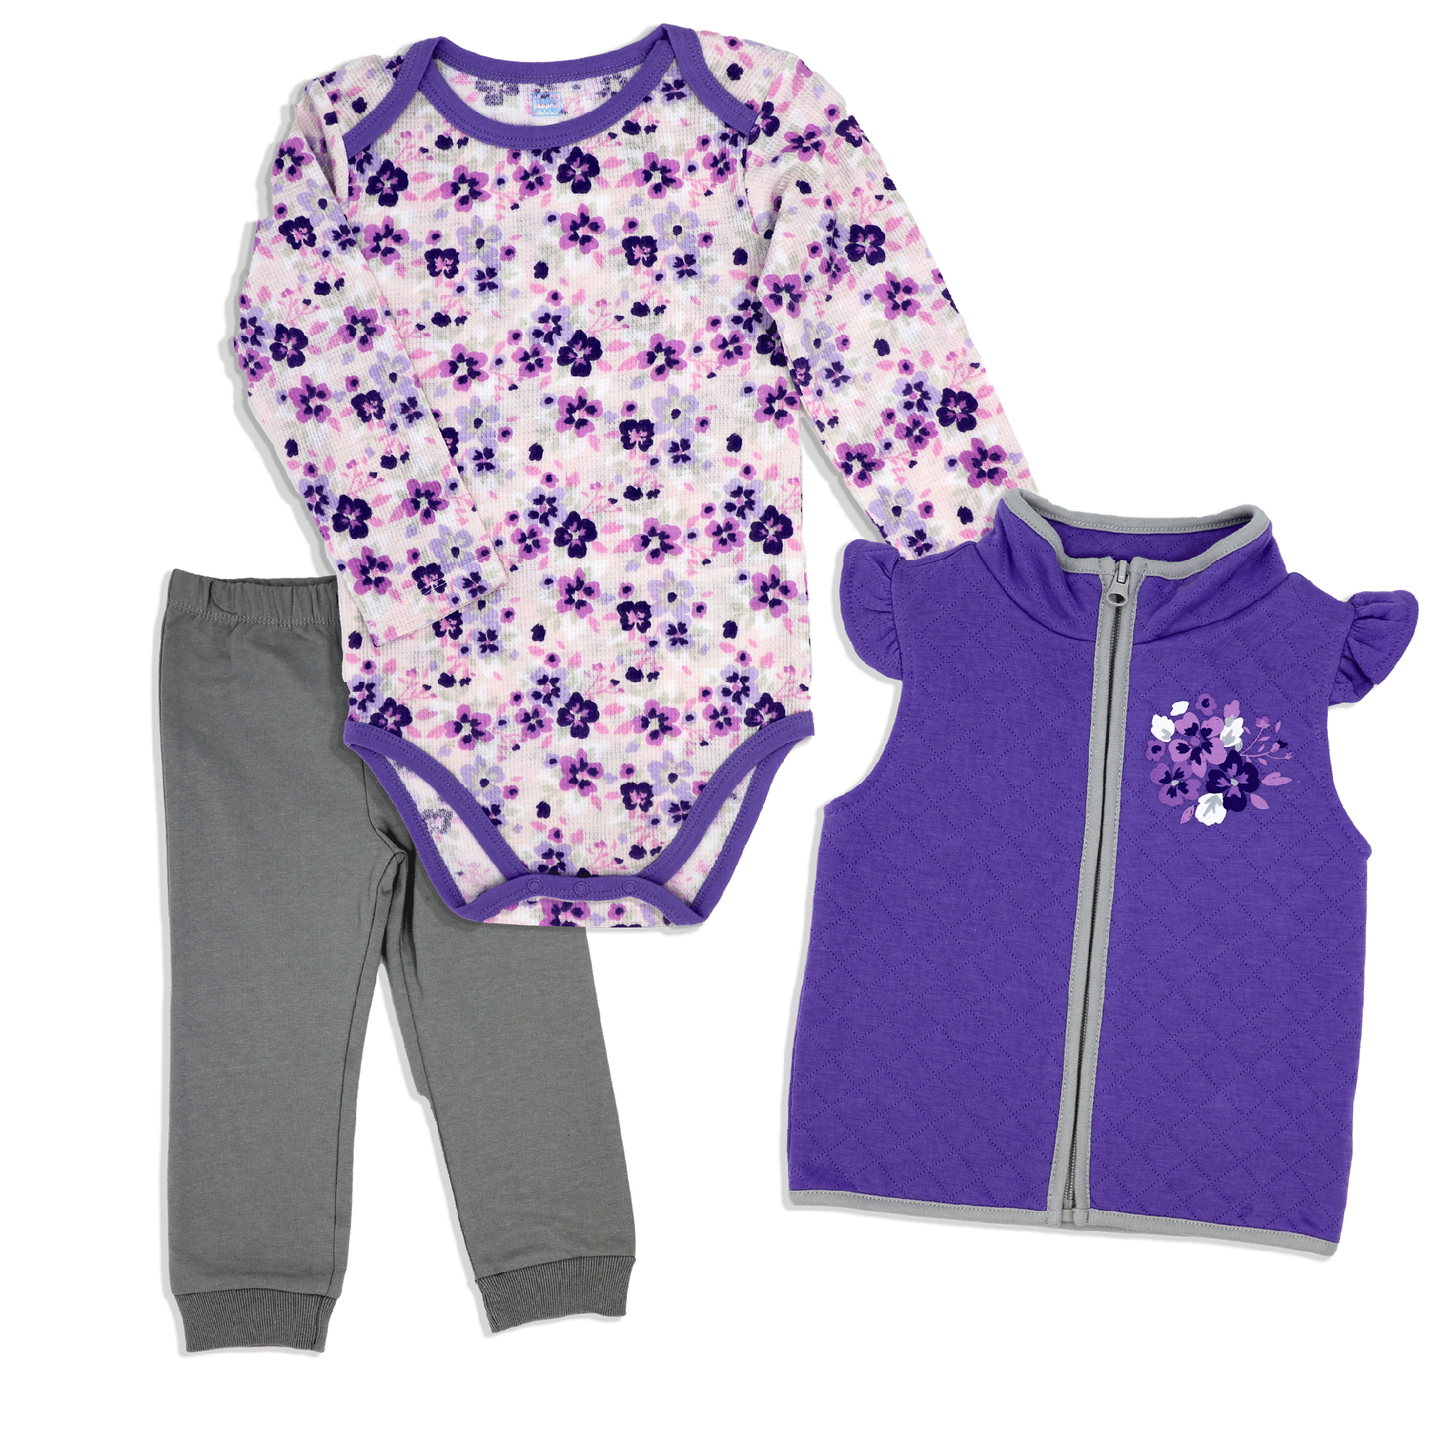 Baby Girl's Legging and Vest Set - Floral